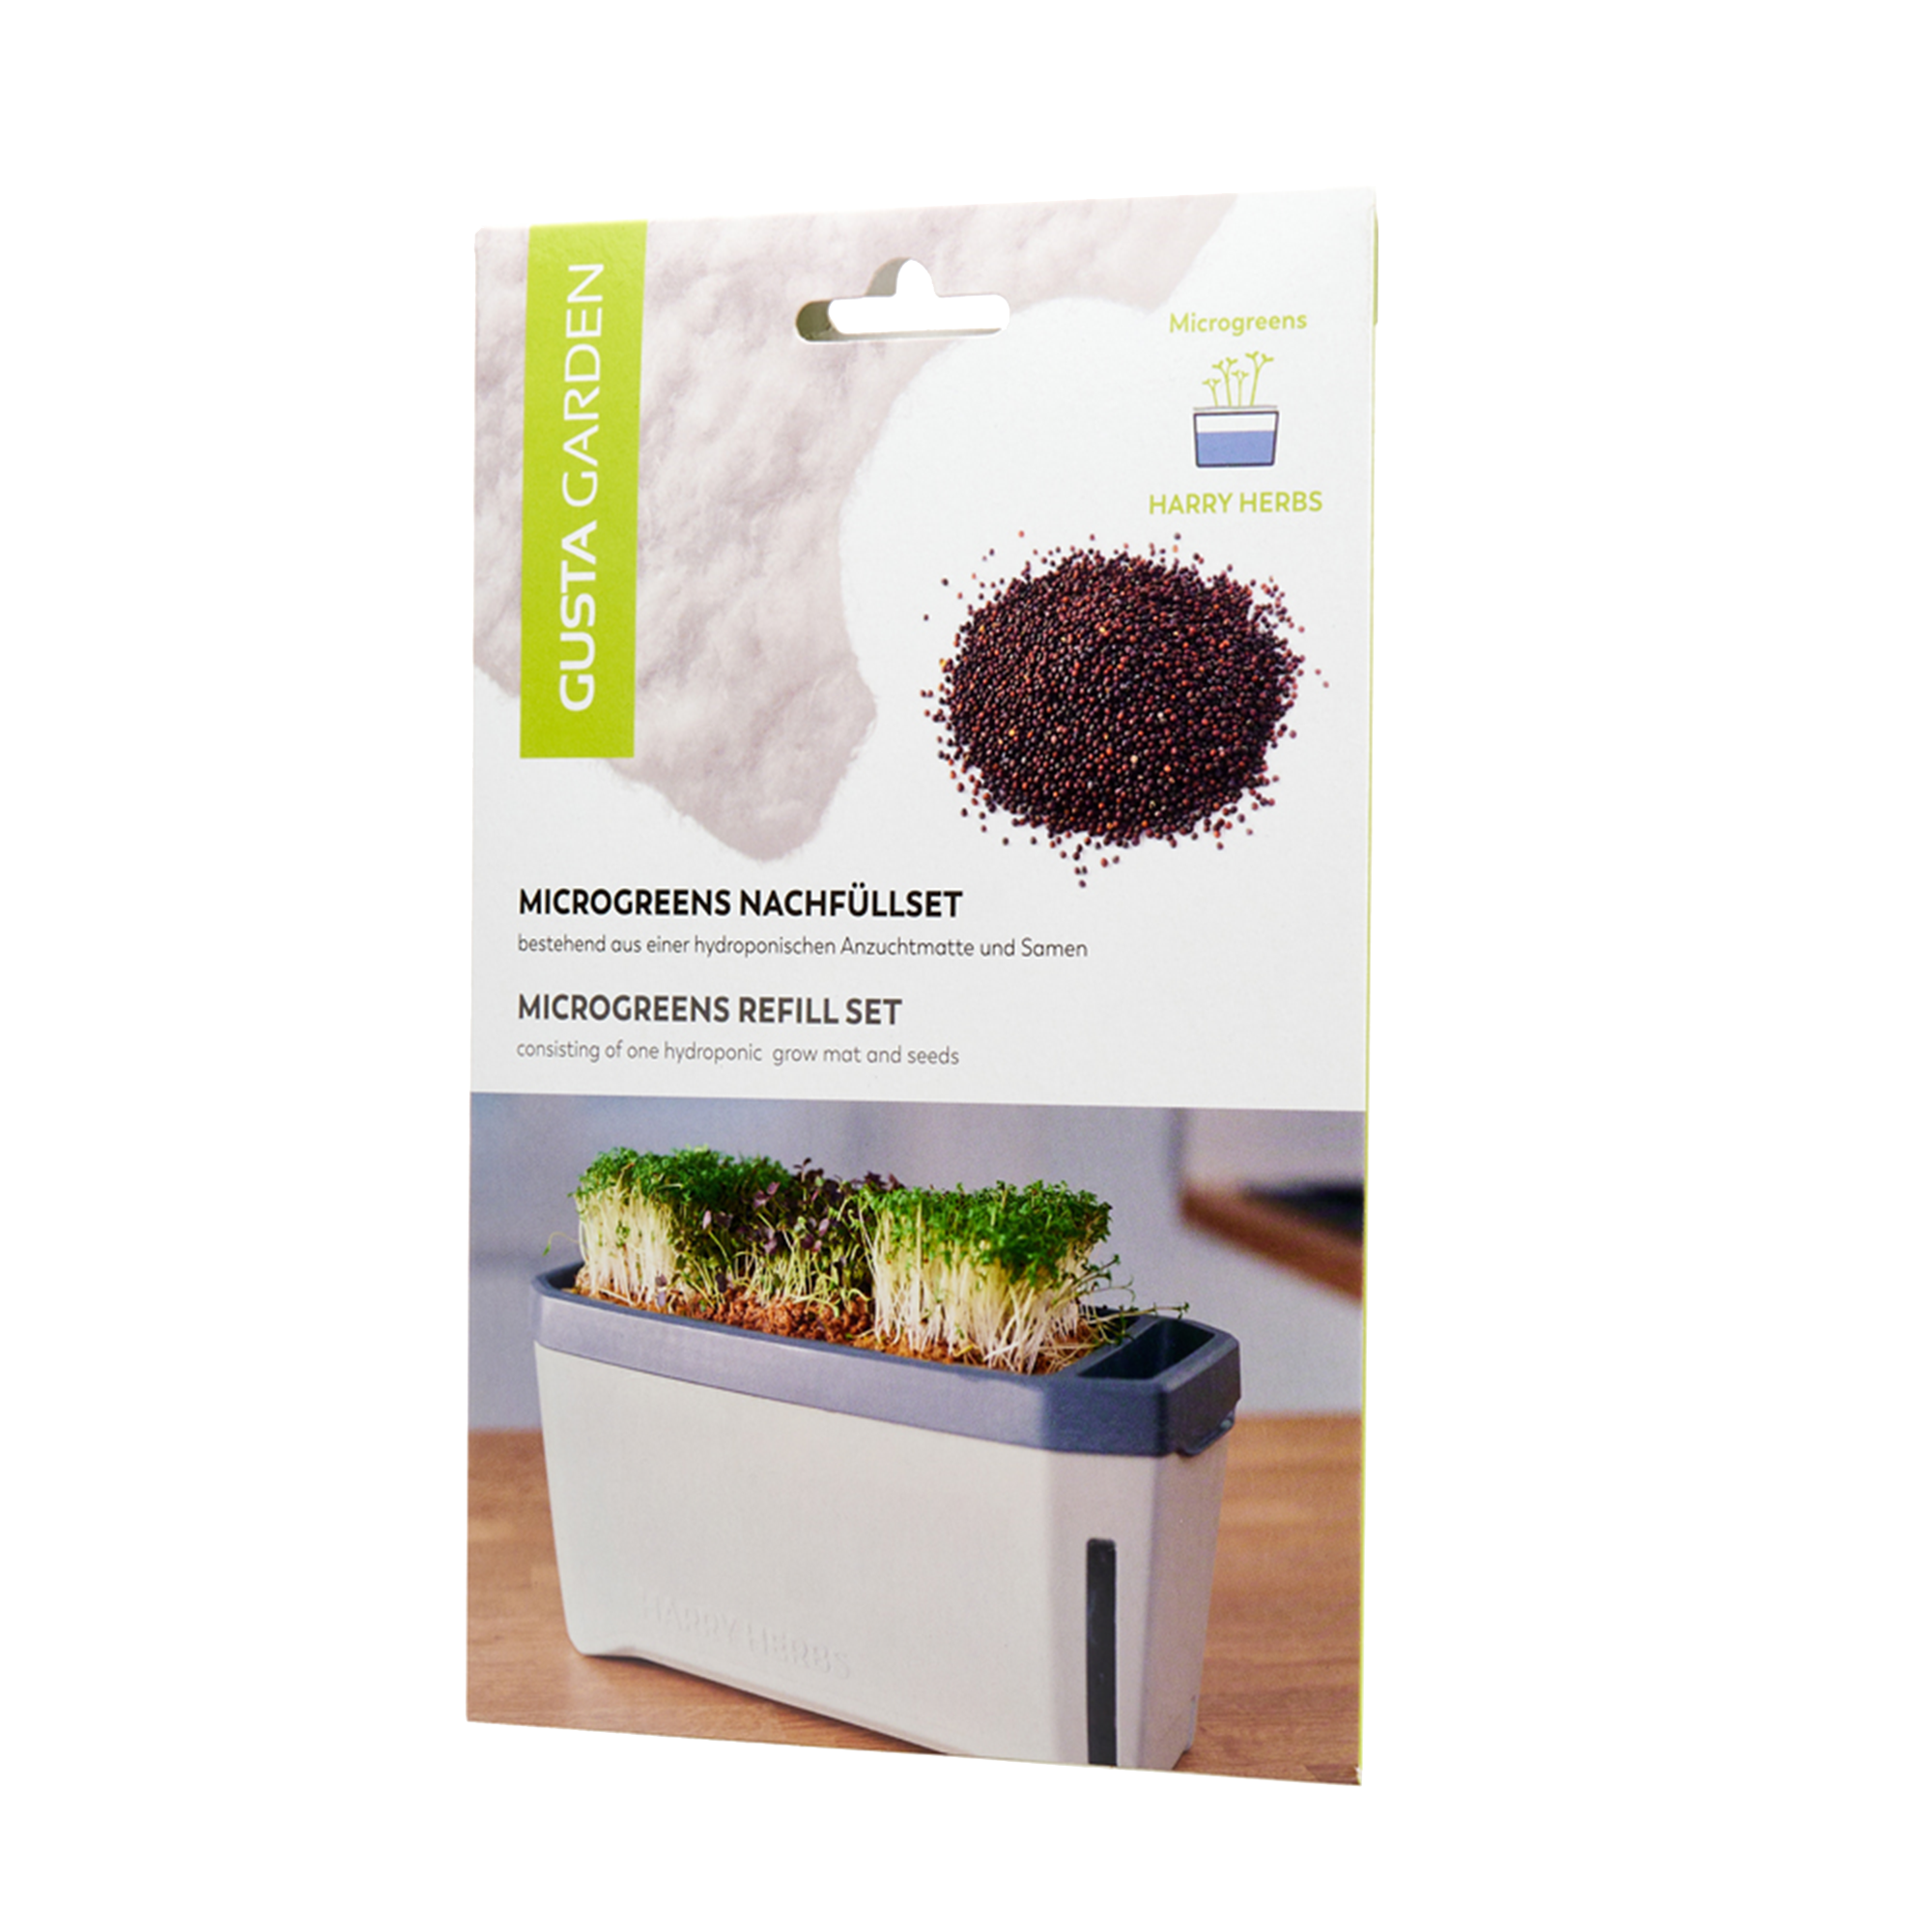 Microgreens refill kit